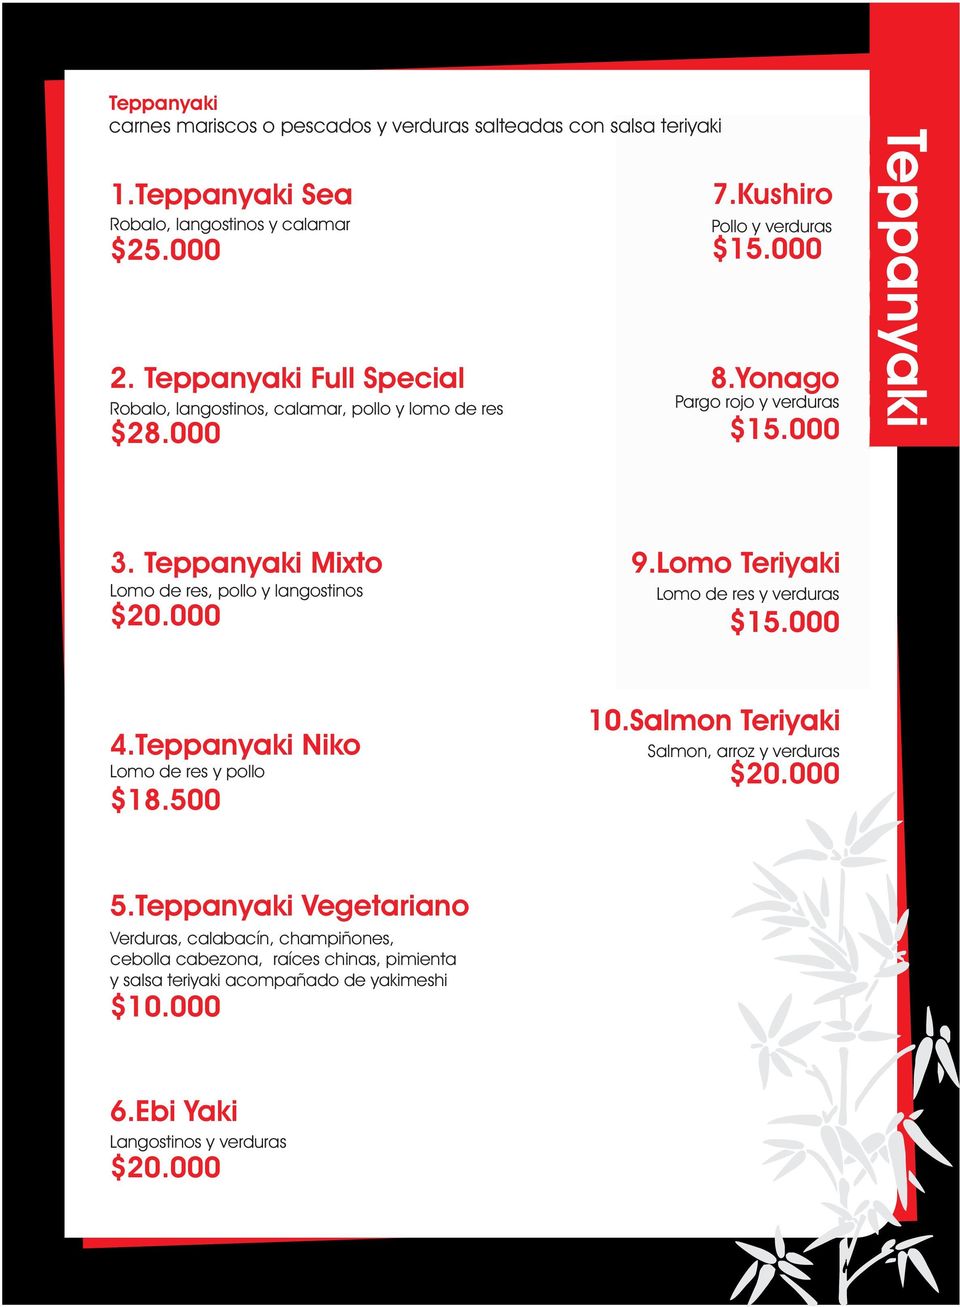 000 Teppanyaki 3. Teppanyaki Mixto Lomo de res, pollo y langostinos $20.000 9.Lomo Teriyaki Lomo de res y verduras 4.